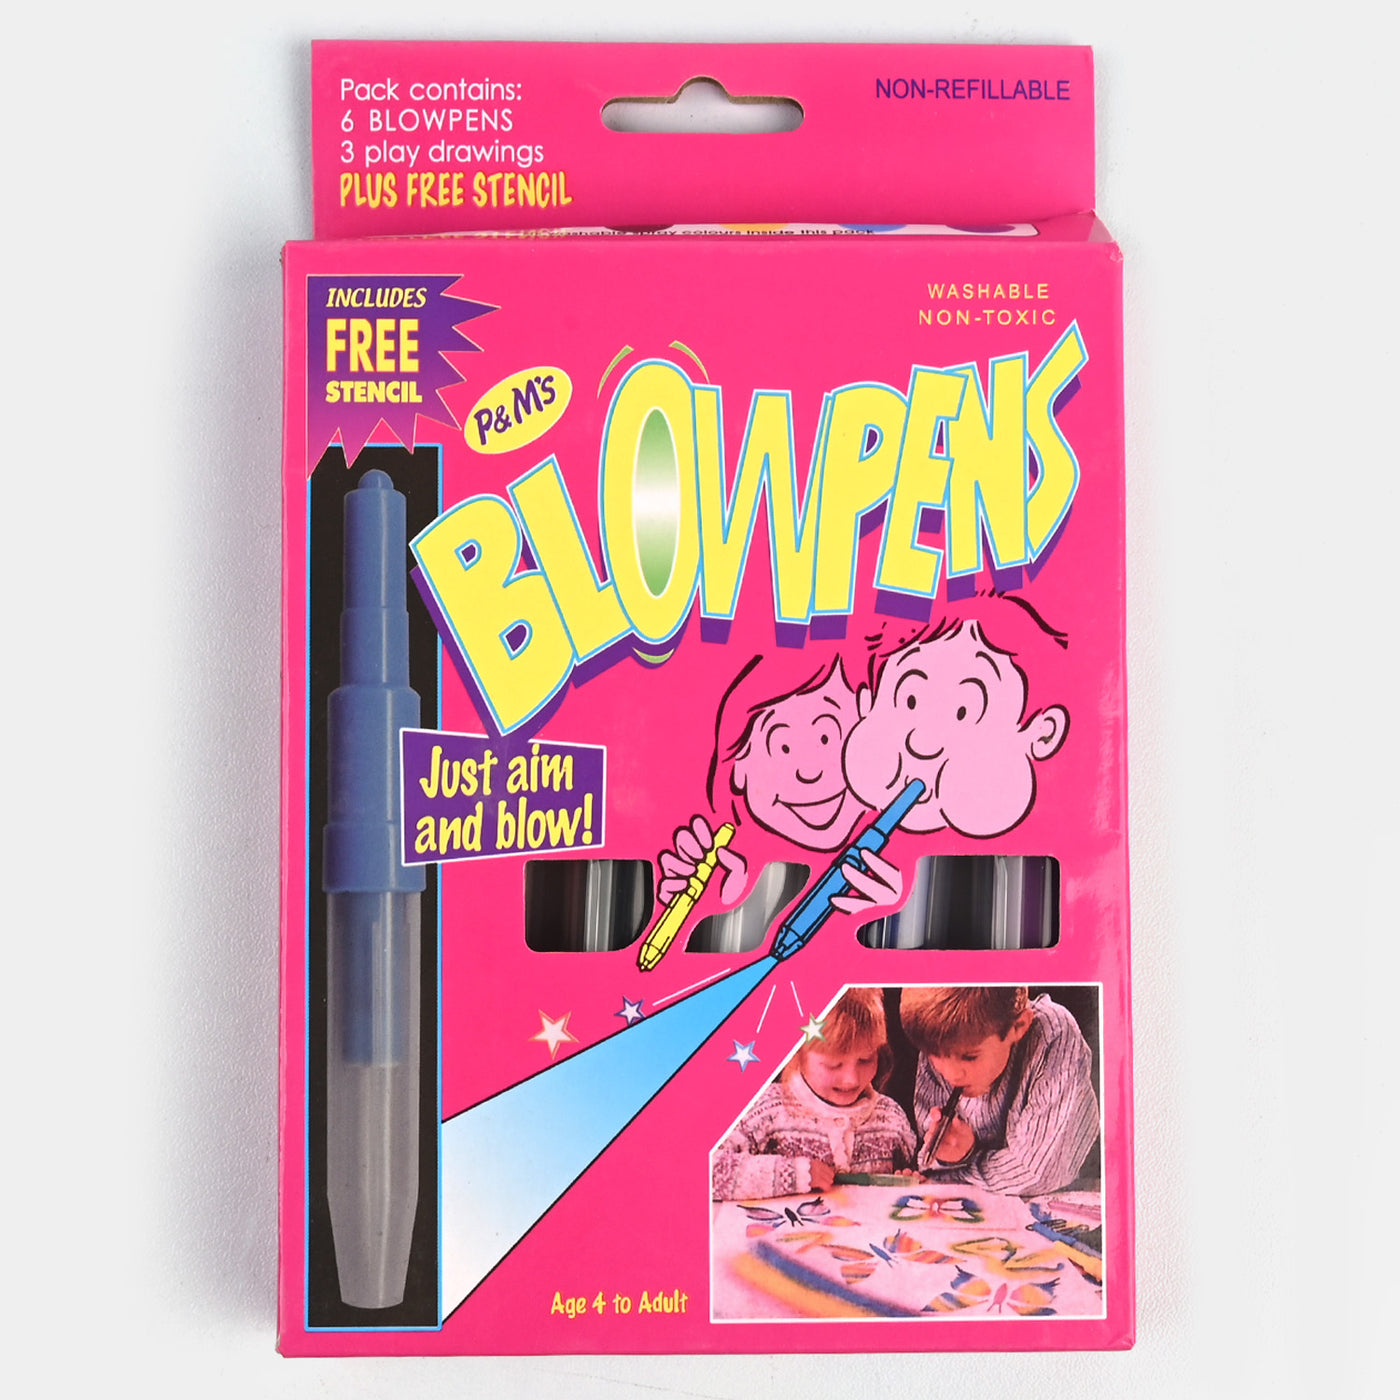 Blow Pen